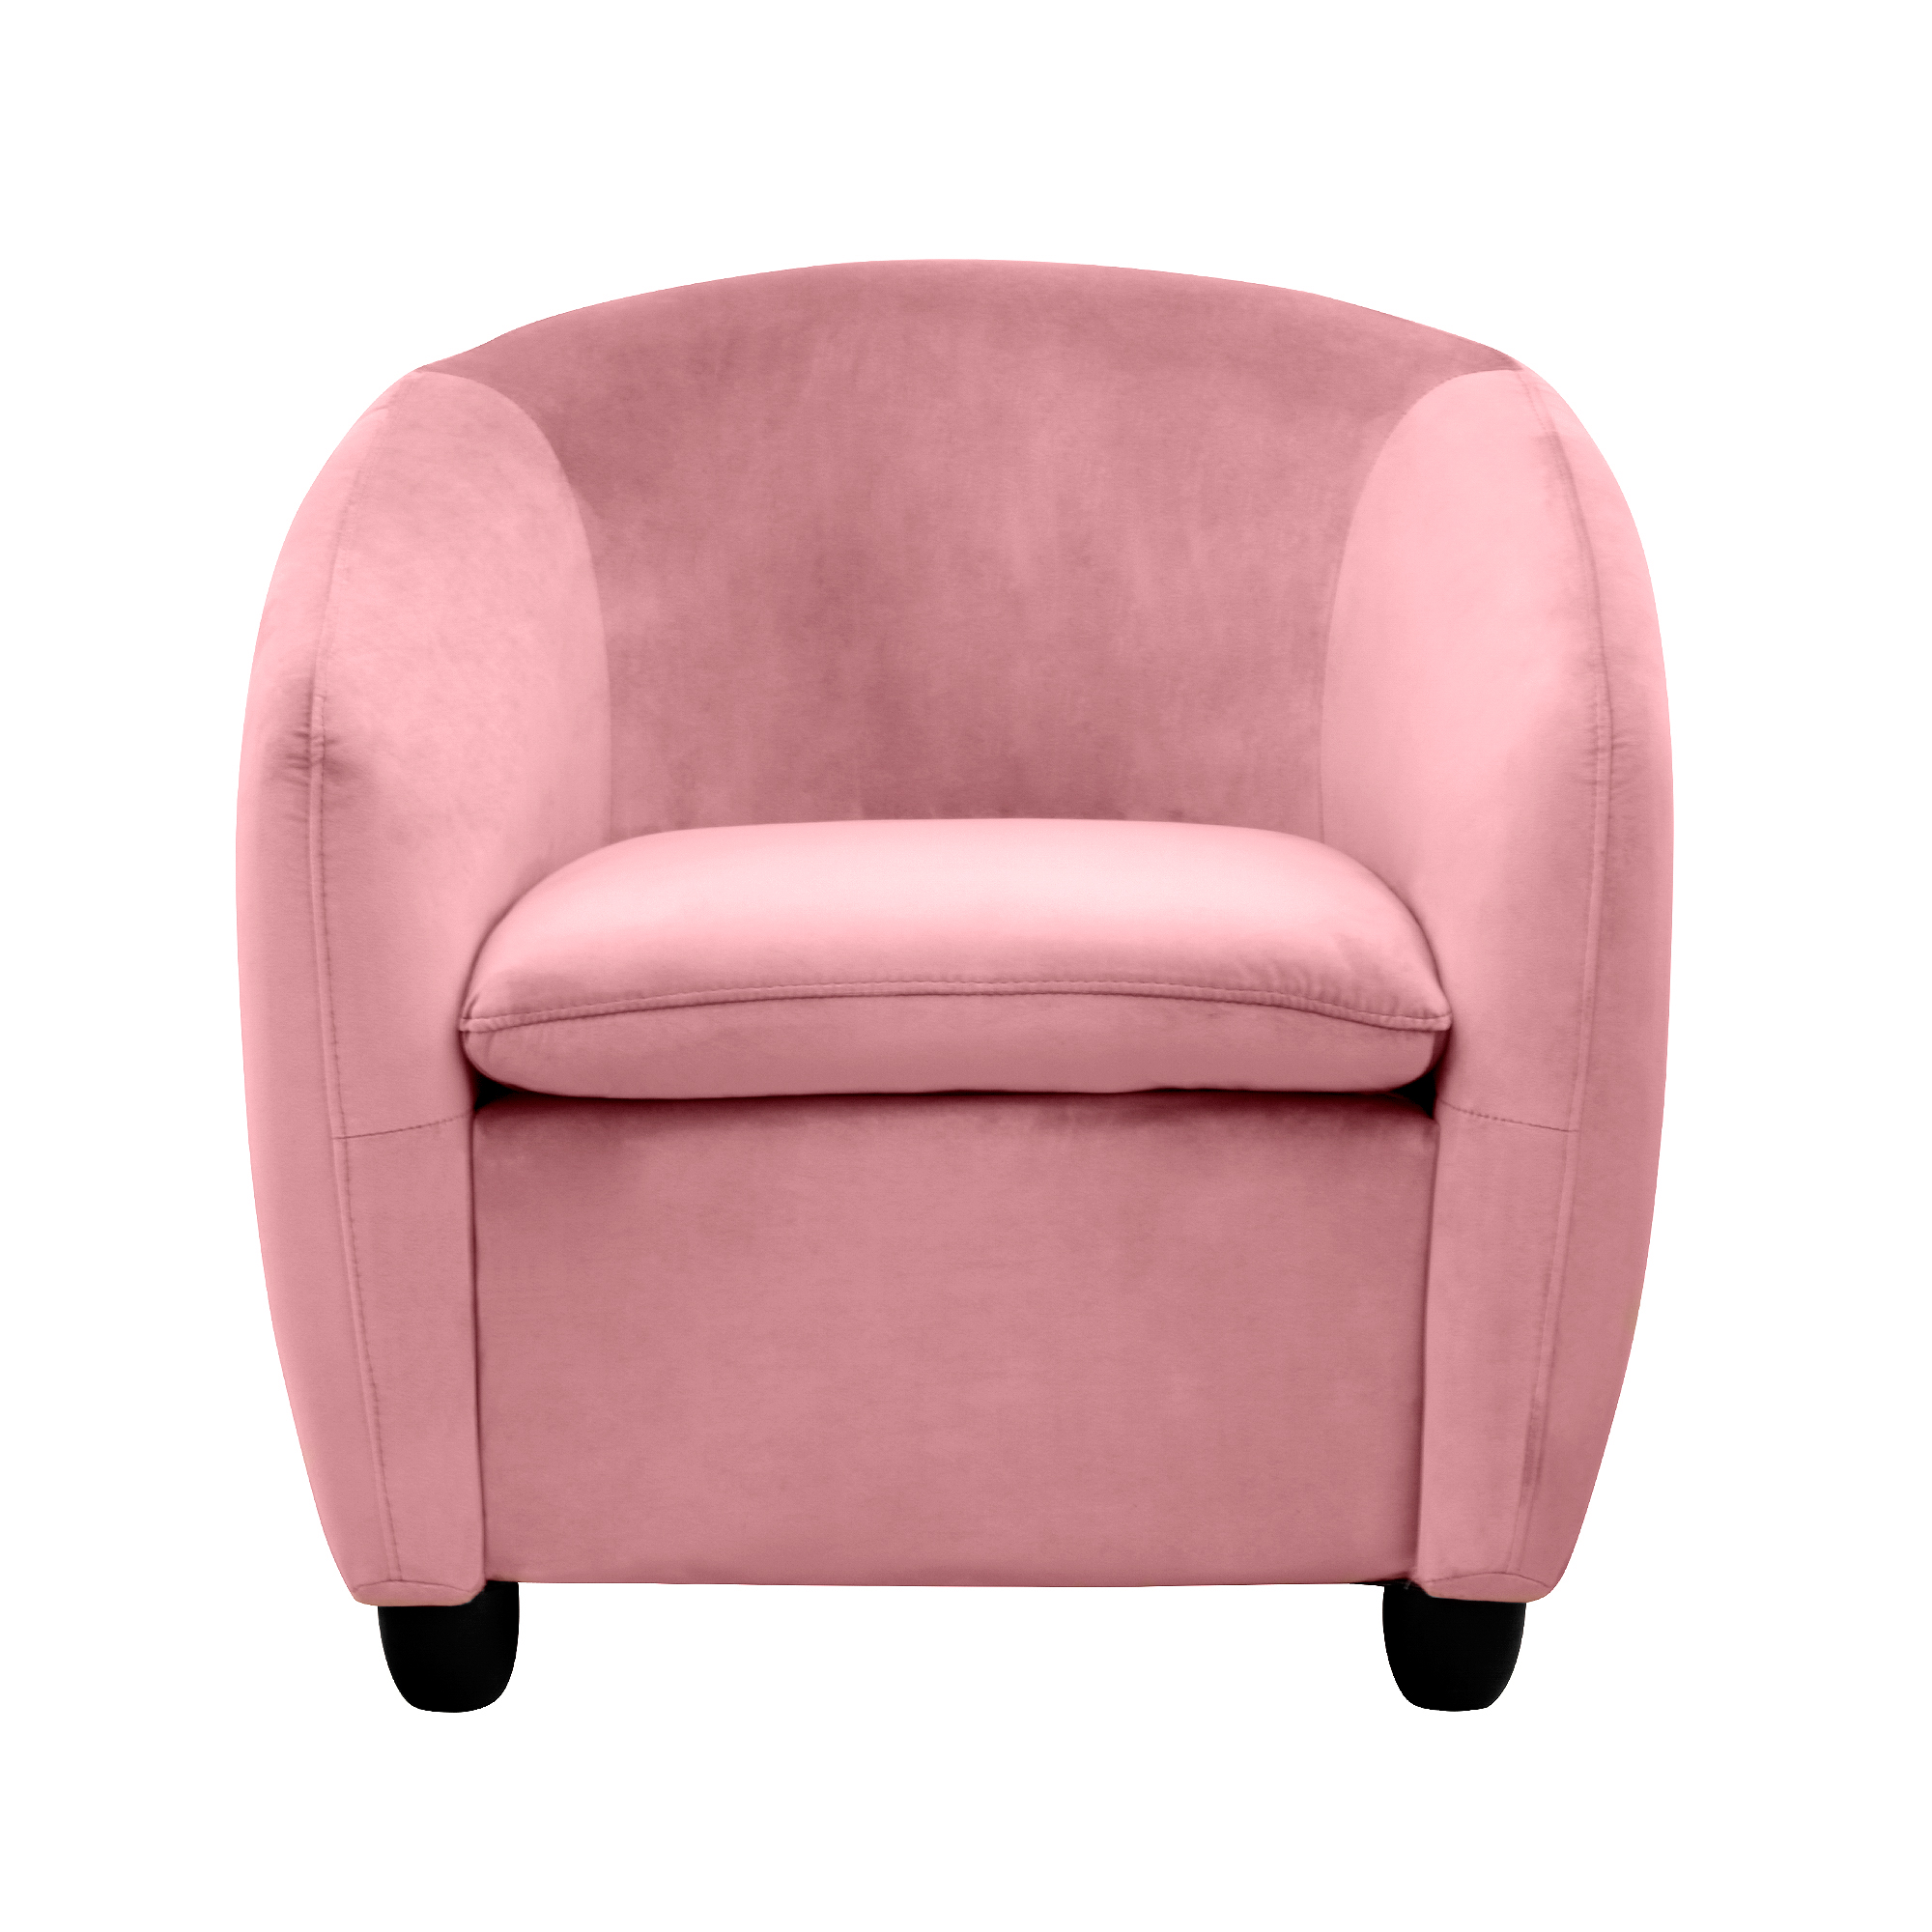 Кресло Liyasi Оливия розовое 72x67x66cm - фото 2